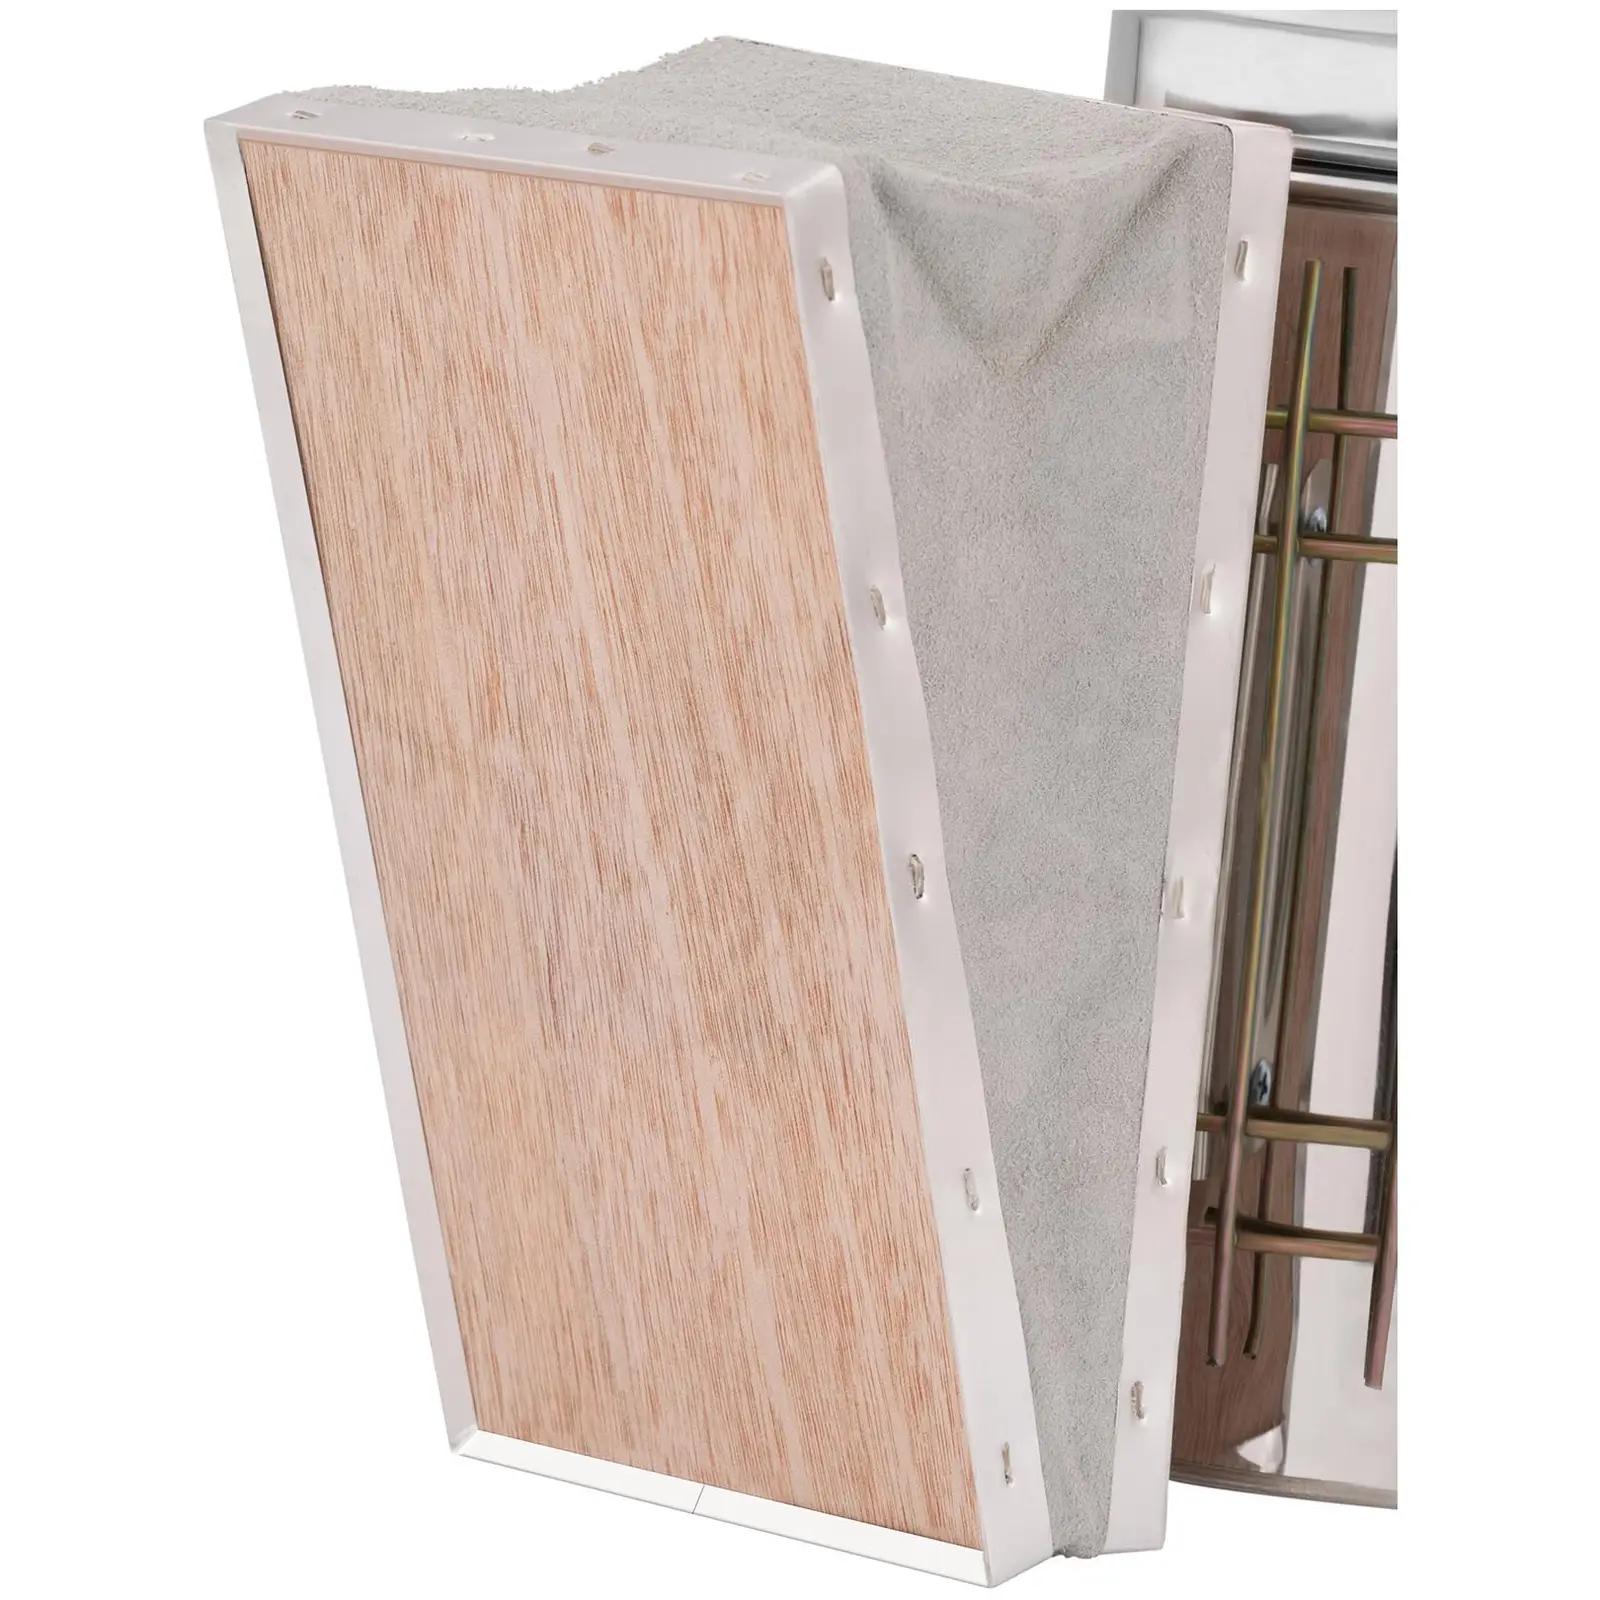 Rökpust för bin - Rostfritt stål, läder och plywood - Med värmesköld - Stor